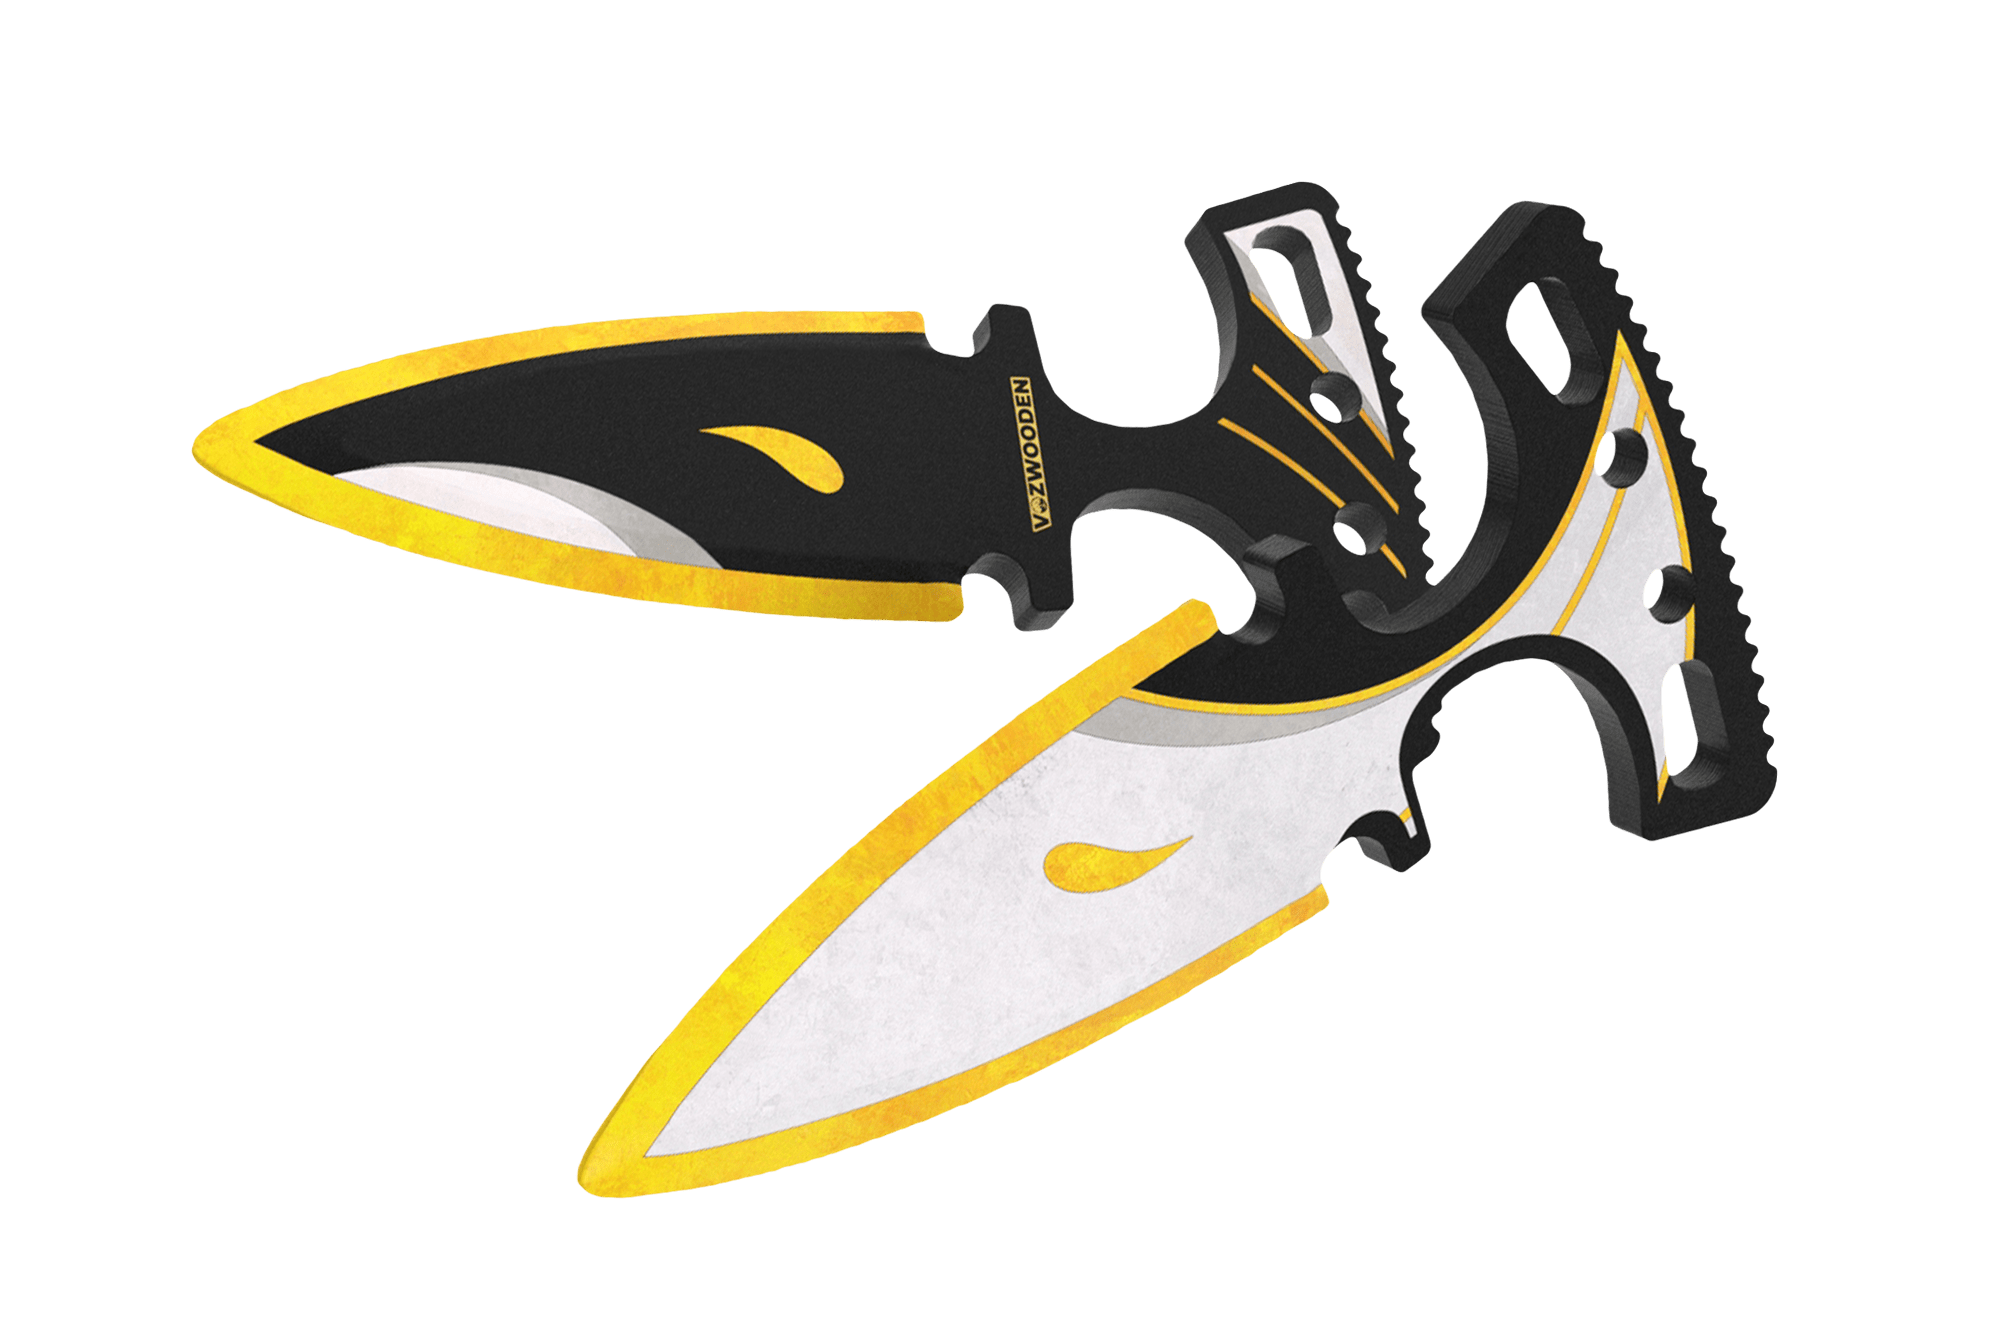 Тычковые ножи — чертеж для распечатки на А4